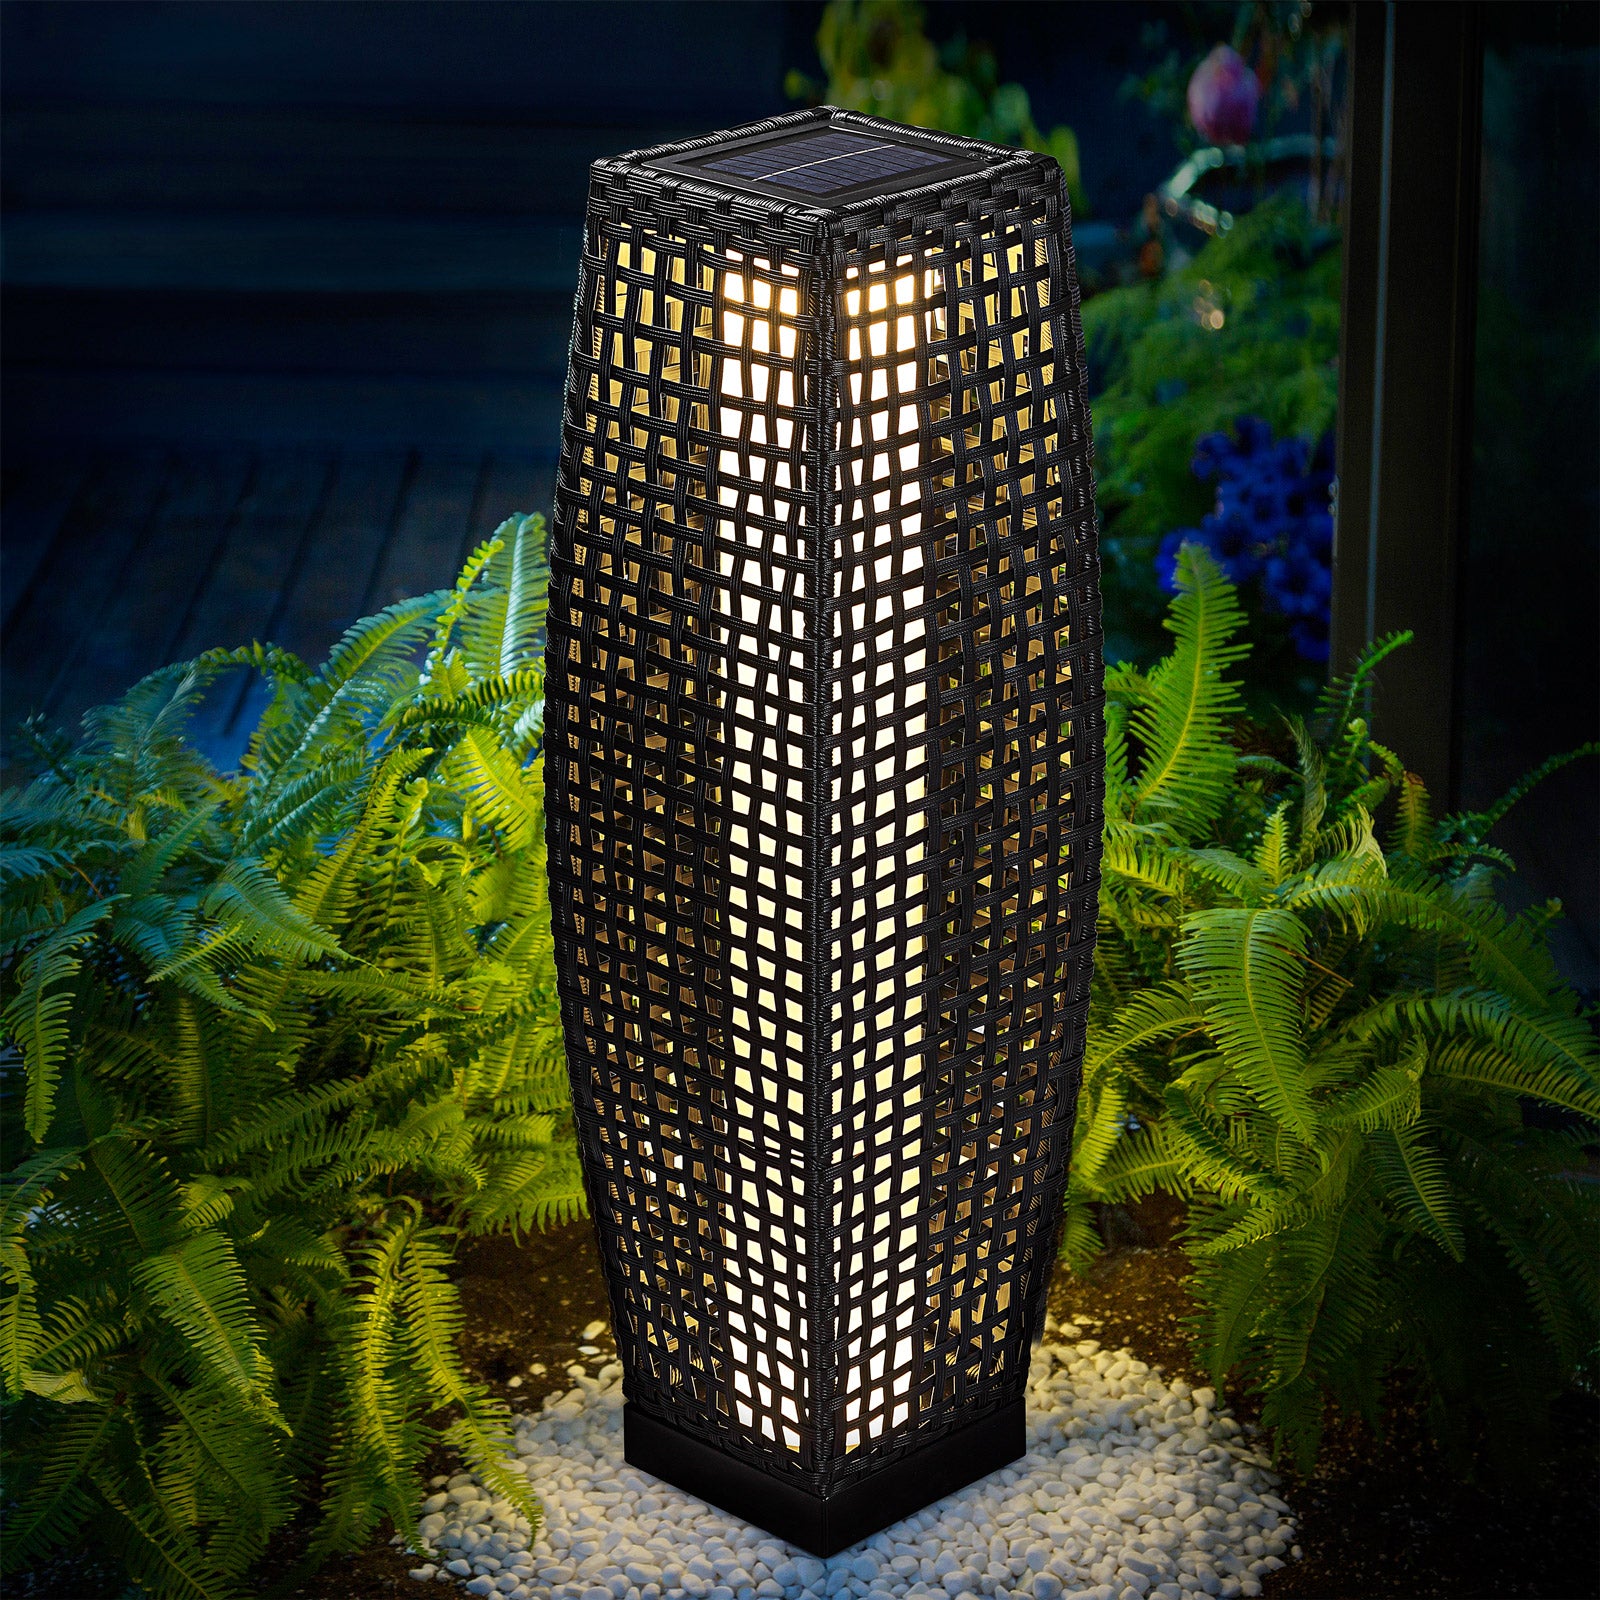 Nancy's Mount Carmel_V3 Garden Lamp - Floor Lamp - Standing Lamp - Lighting - Solar Energy - LED Lamp - 50 x 18 x 18 cm